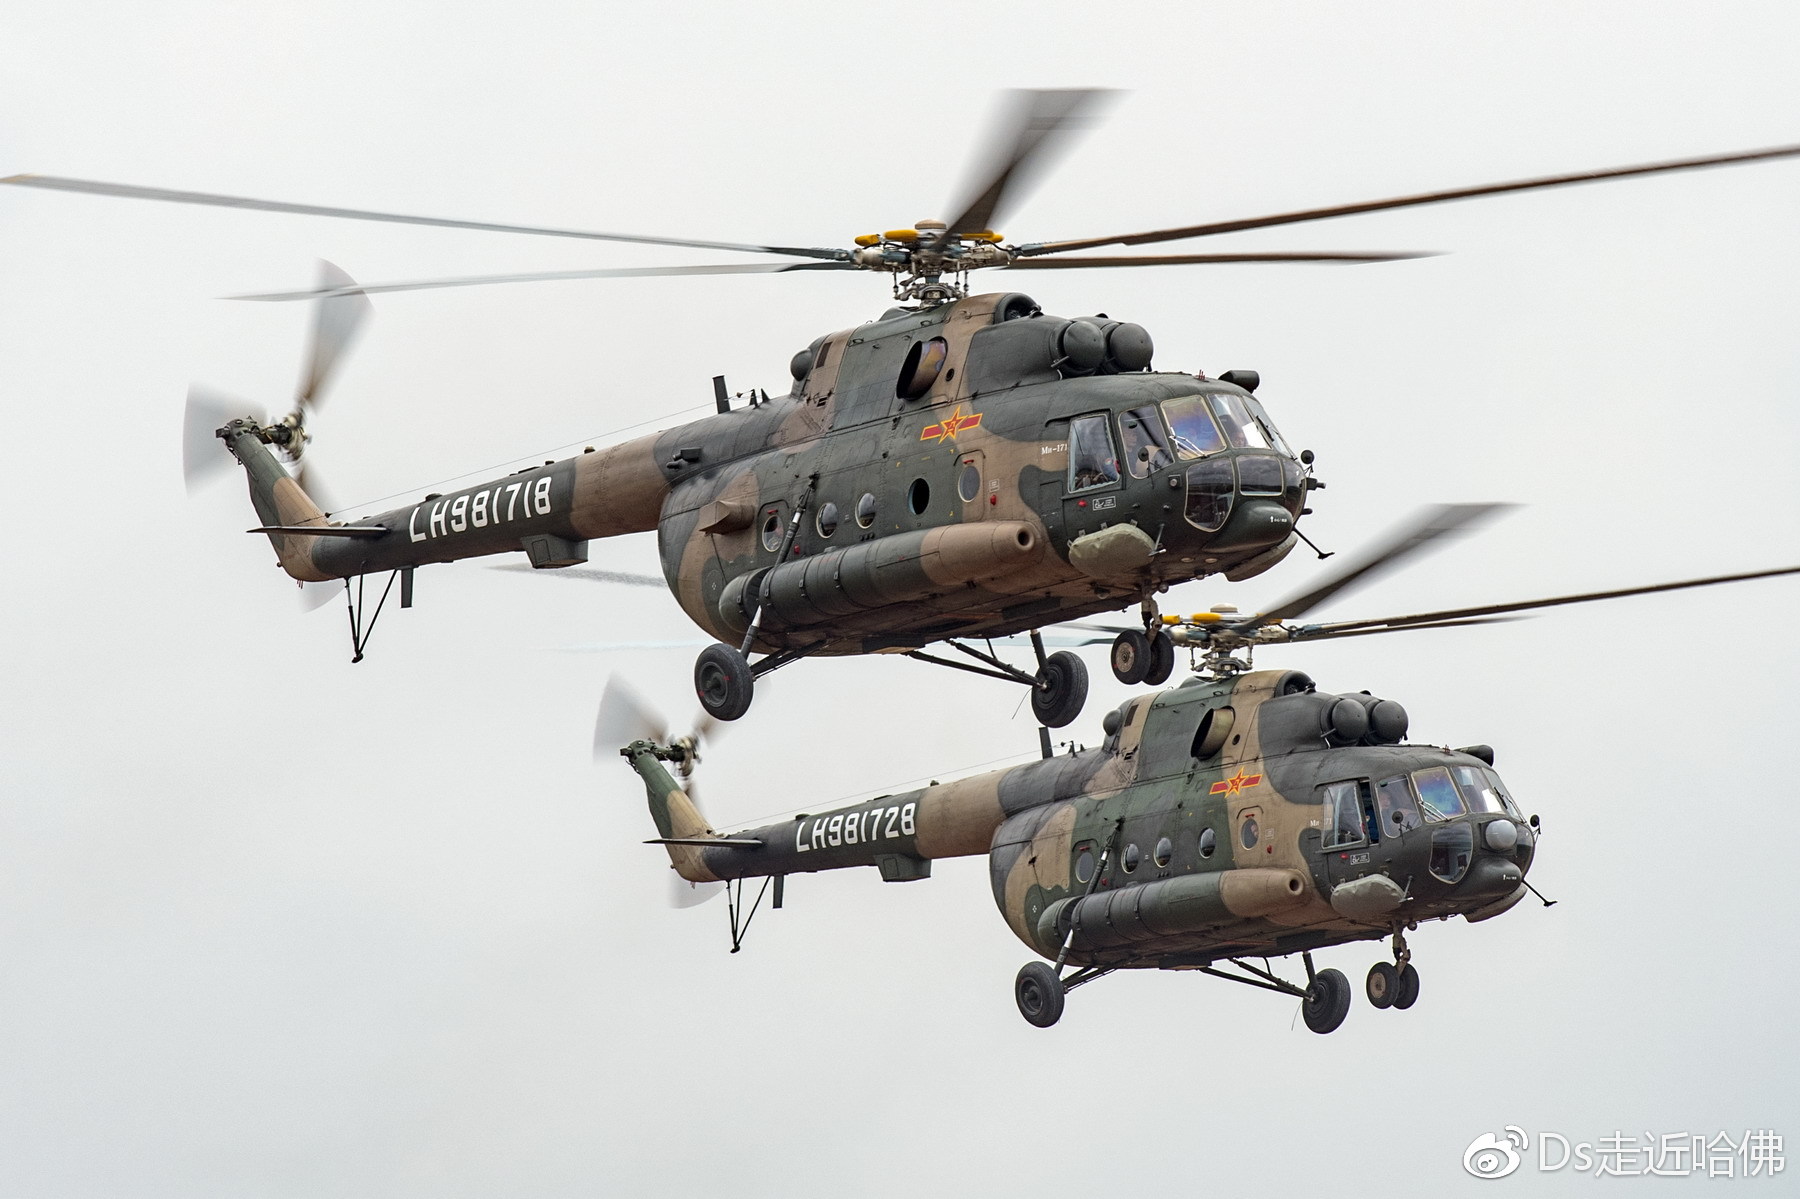 剑指台海!说说第74集团军某陆航旅米171直升机机头两侧“神秘”装备